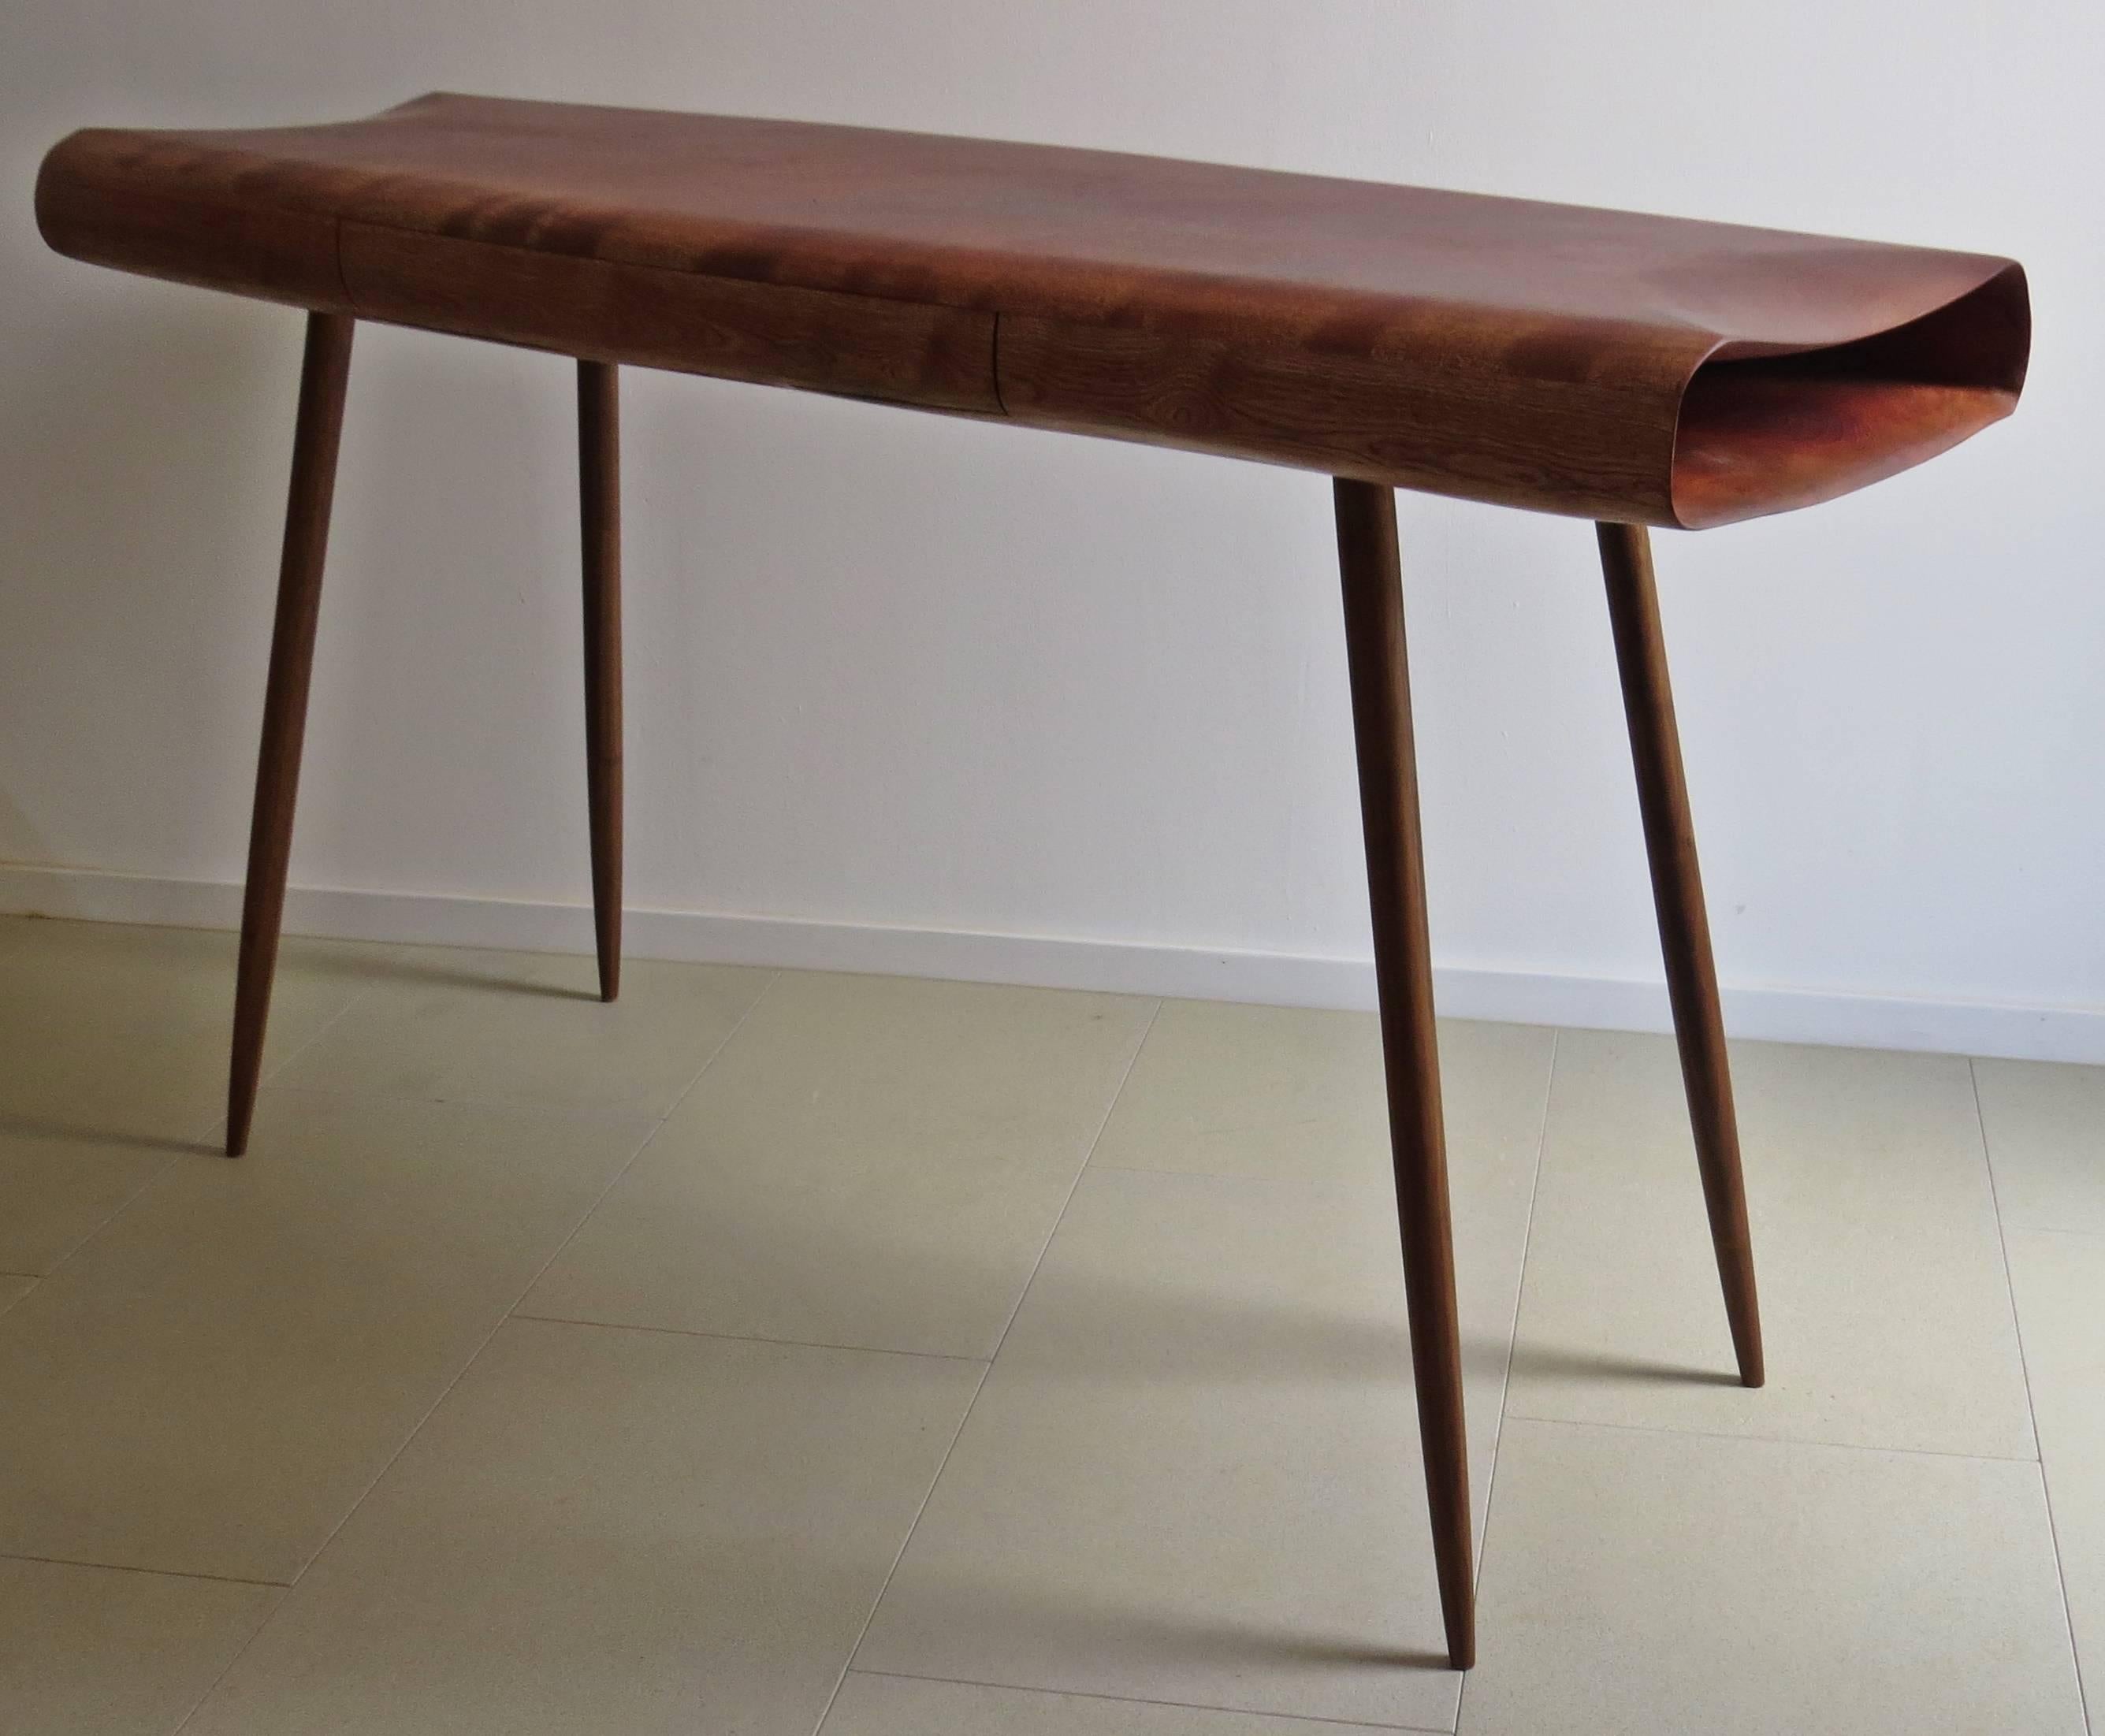 Schreibtisch oder Konsole aus Massivholz in organischem Design.
Hergestellt vom deutschen Tischler und Bildhauer Eckehard Weimann.
Die Möbel sind handgefertigt. Der Körper wird organisch bearbeitet, Falten und Kurven werden fein geschliffen. Diese